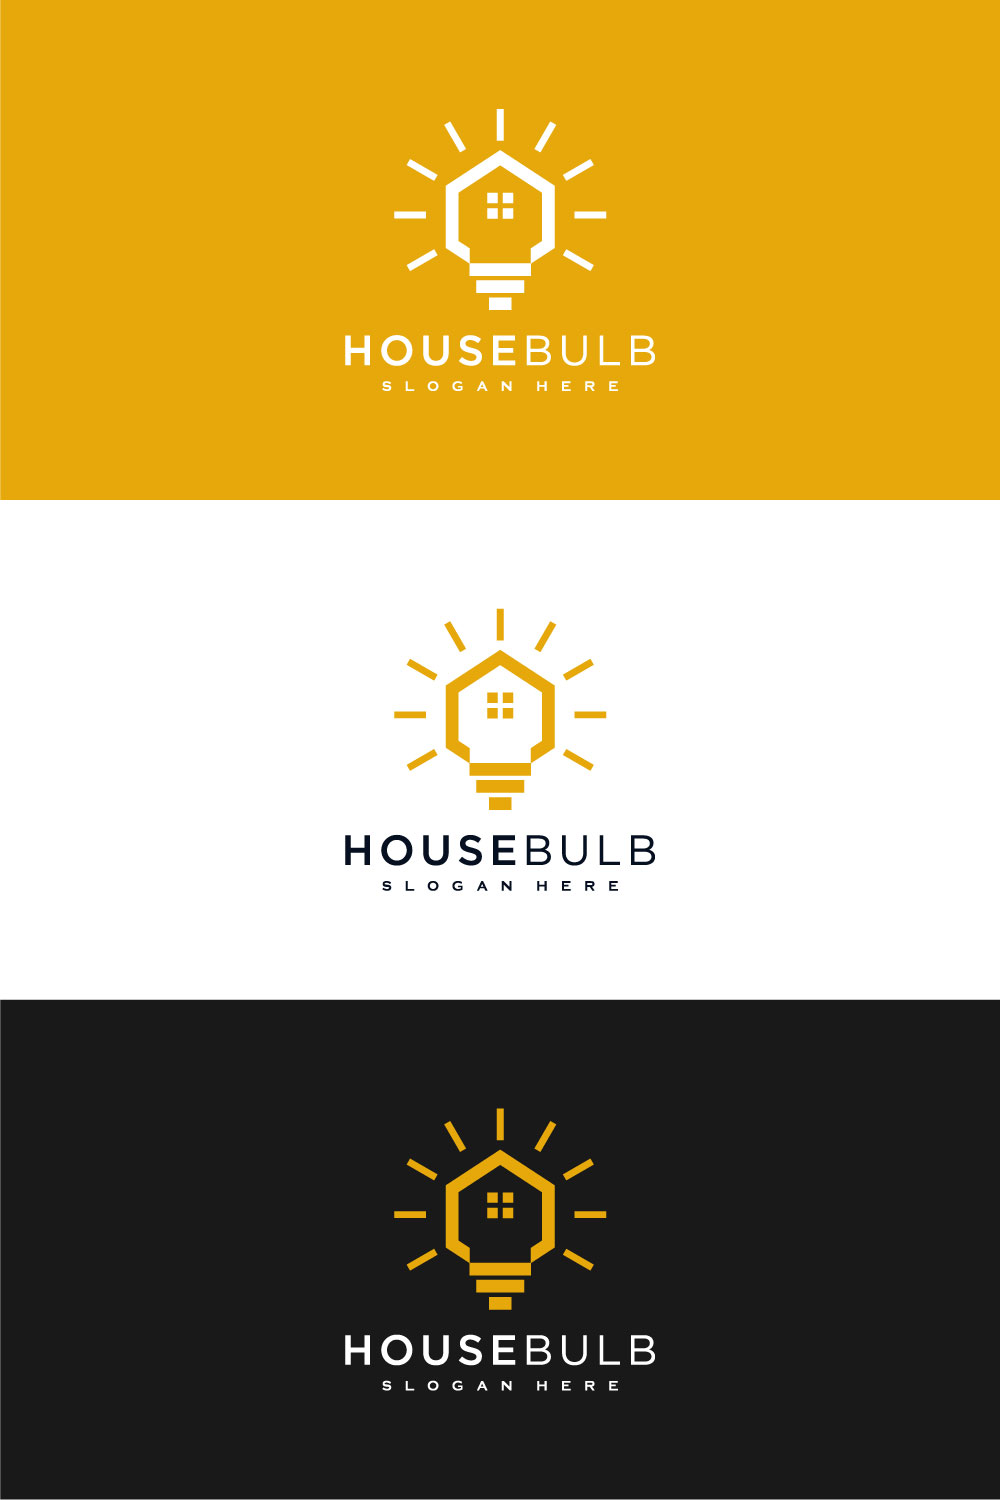 House Bulb Logo Vector Design pinterest image.